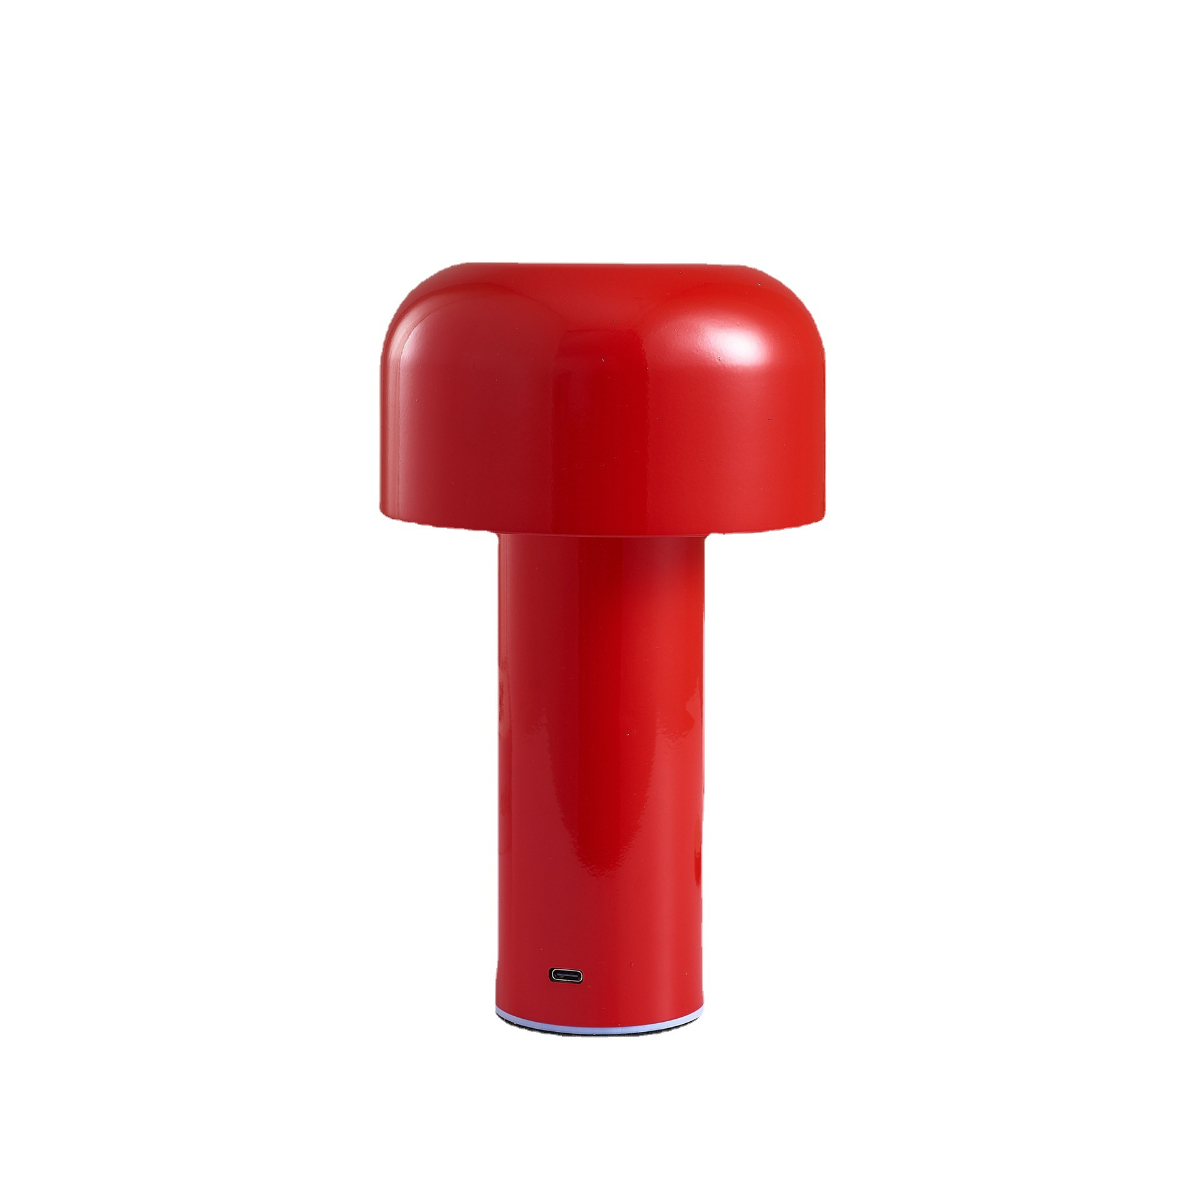 Rote dreifarbig Weiß, LACAMAX wechselndes stufenlos Rot, LED-Pilz-Tischlampe - Gelb dimmbar, Licht LED-Licht,